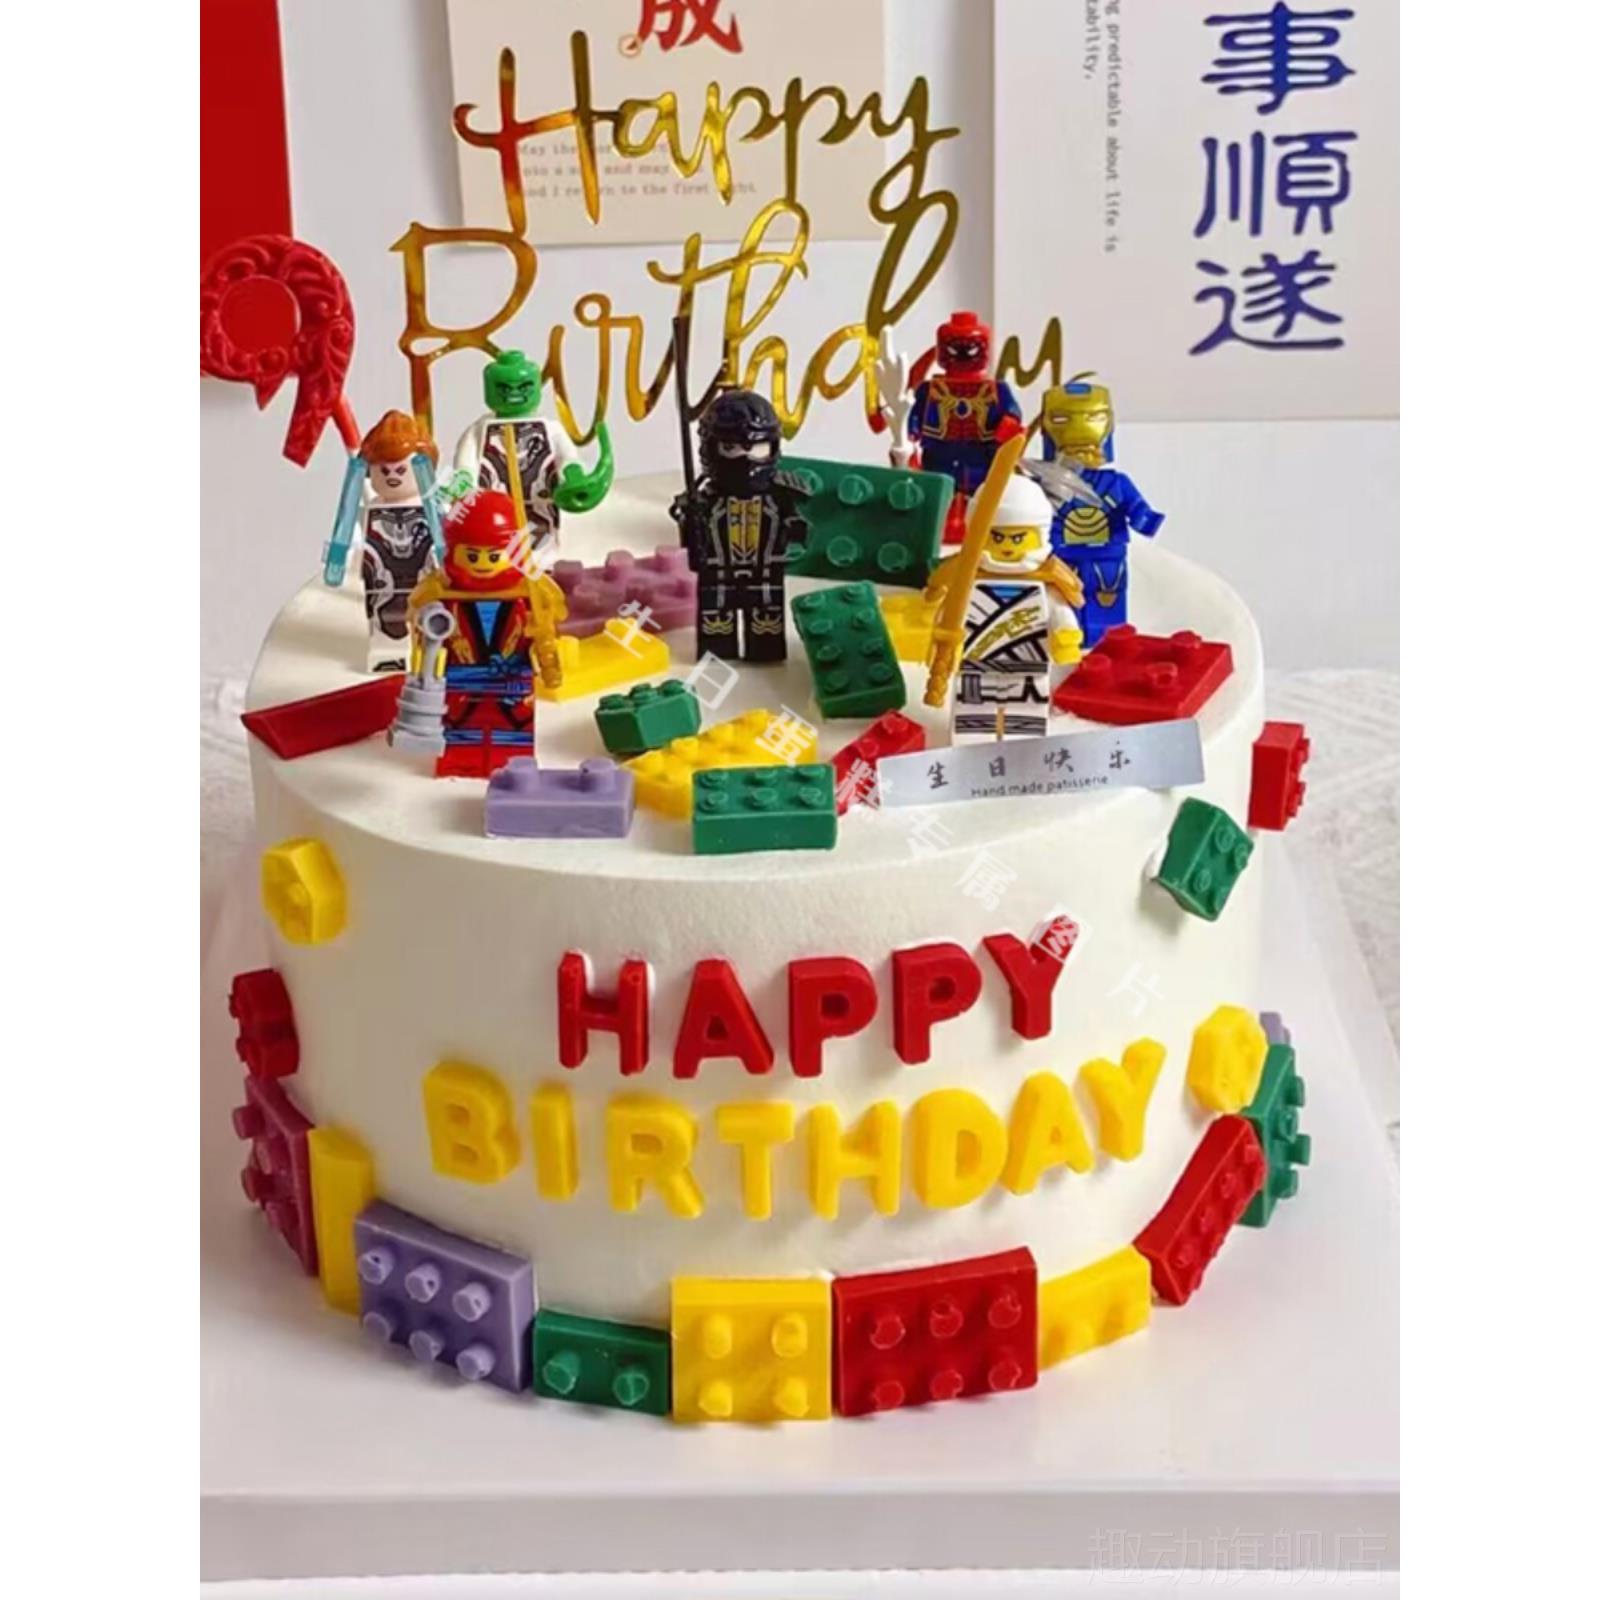 加高我的迷你世界动物奶油儿童生日蛋糕同城配送深圳上海杭州天津